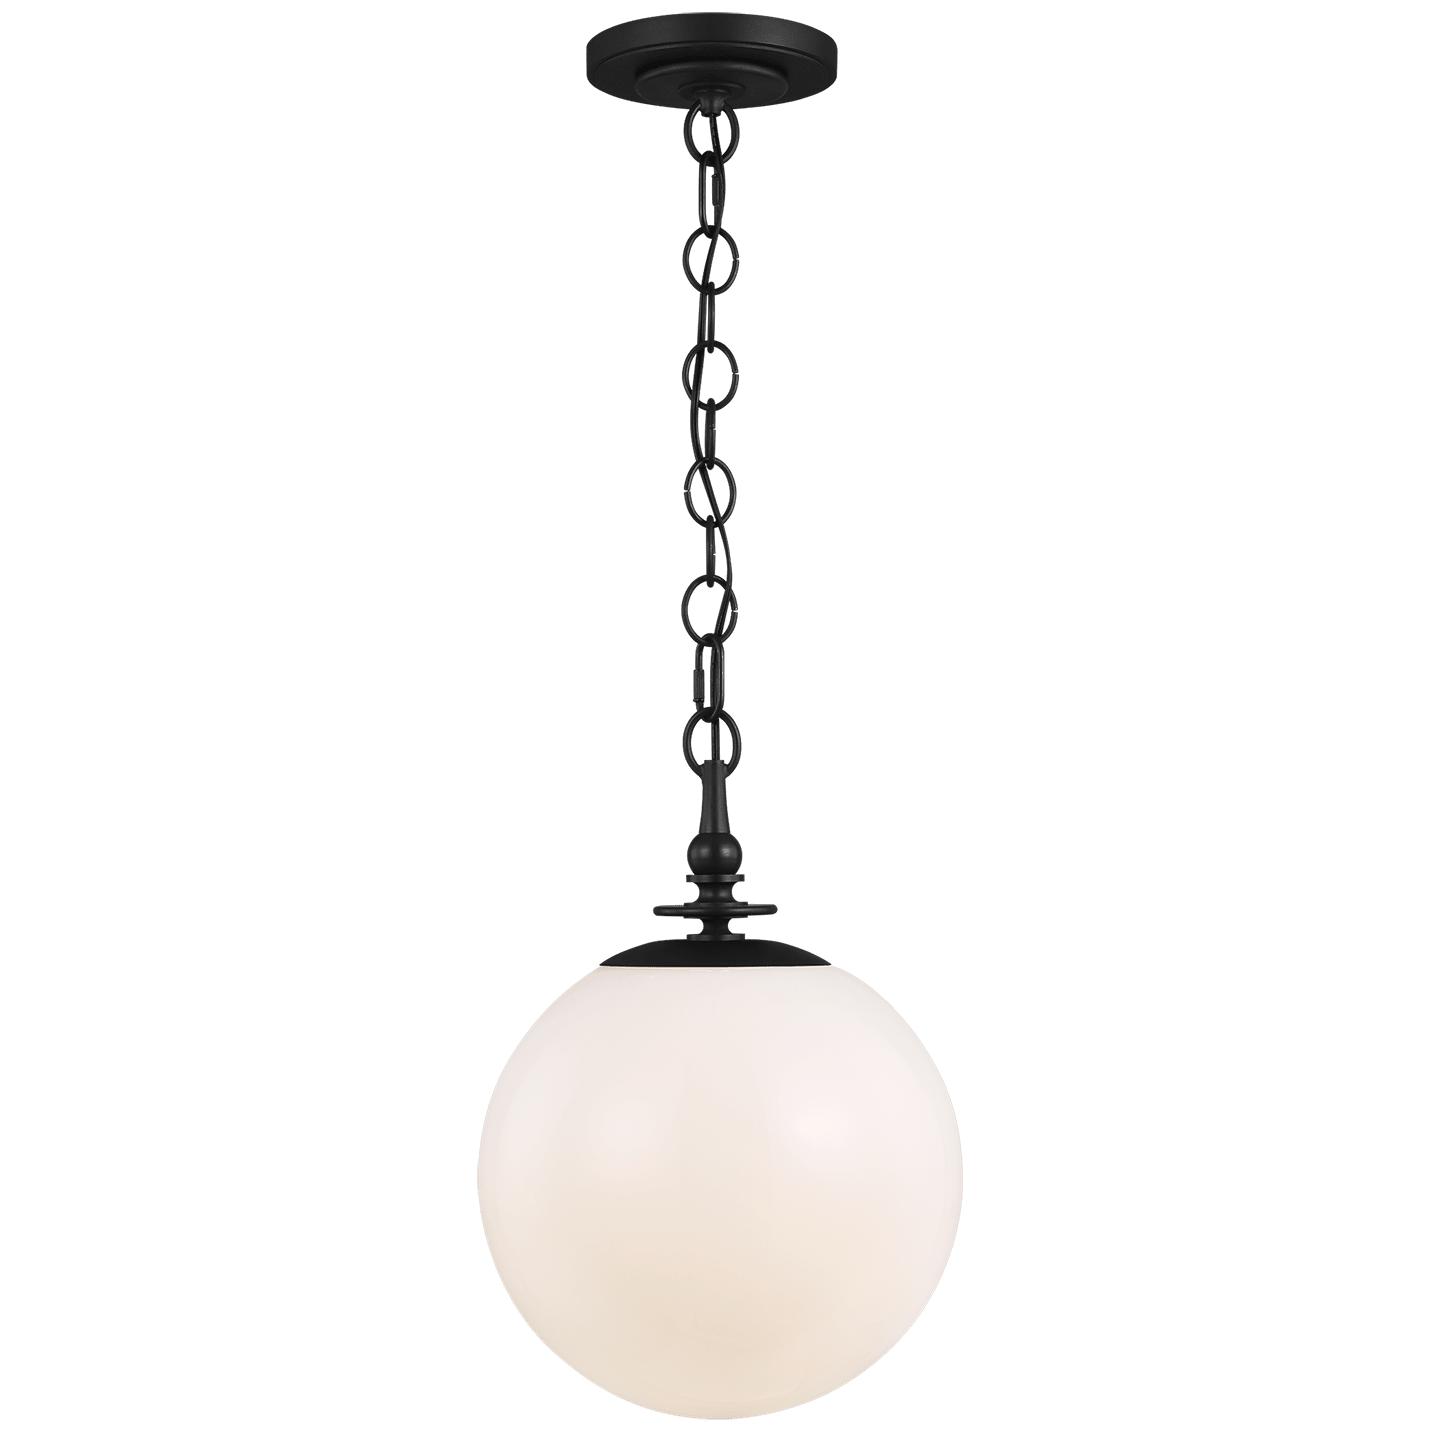 Купить Подвесной светильник Capri Large Pendant в интернет-магазине roooms.ru